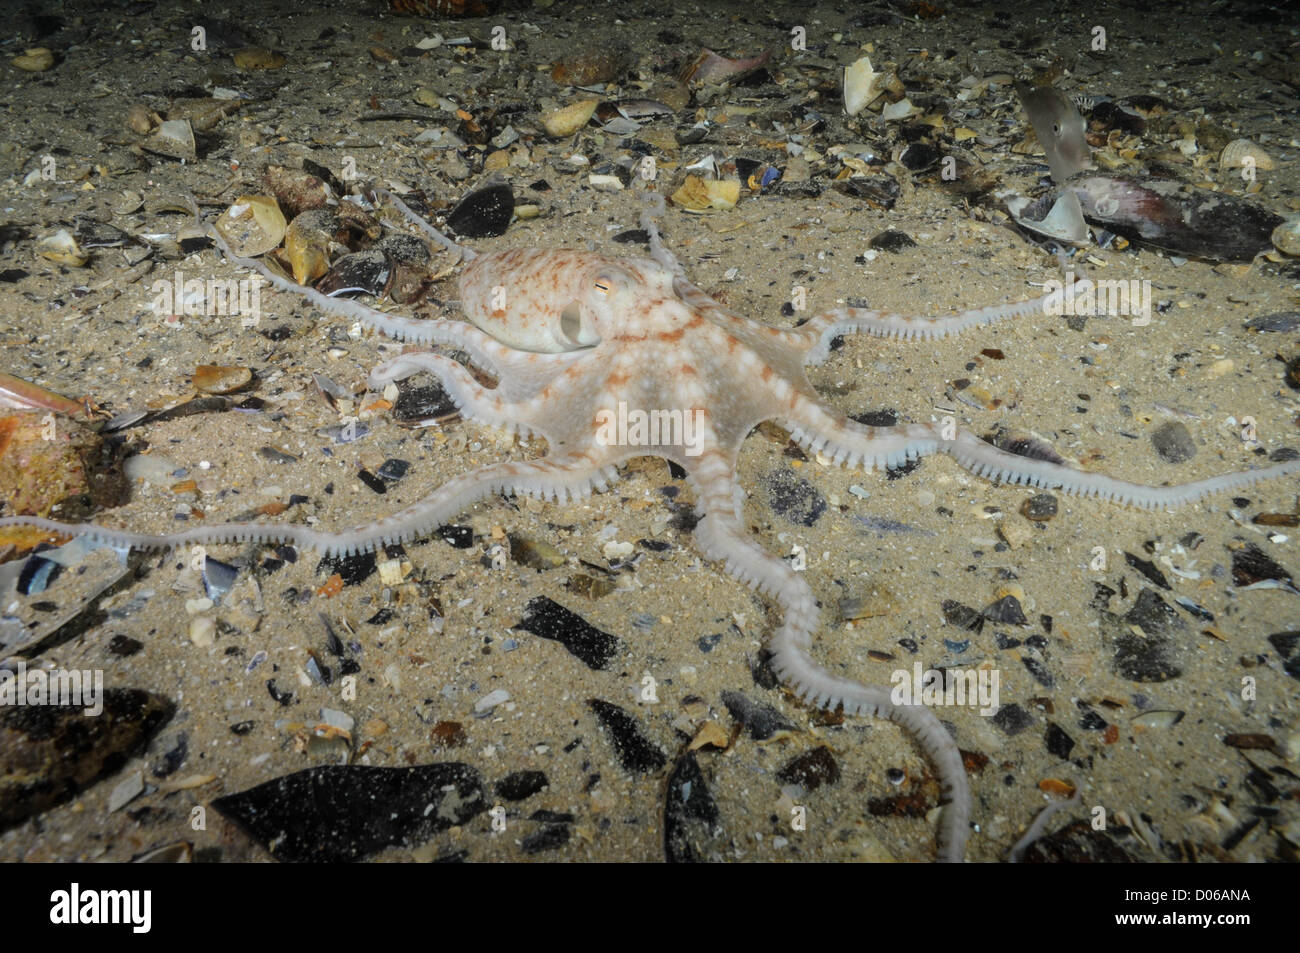 Double Spot Night Octopus. Stock Photo